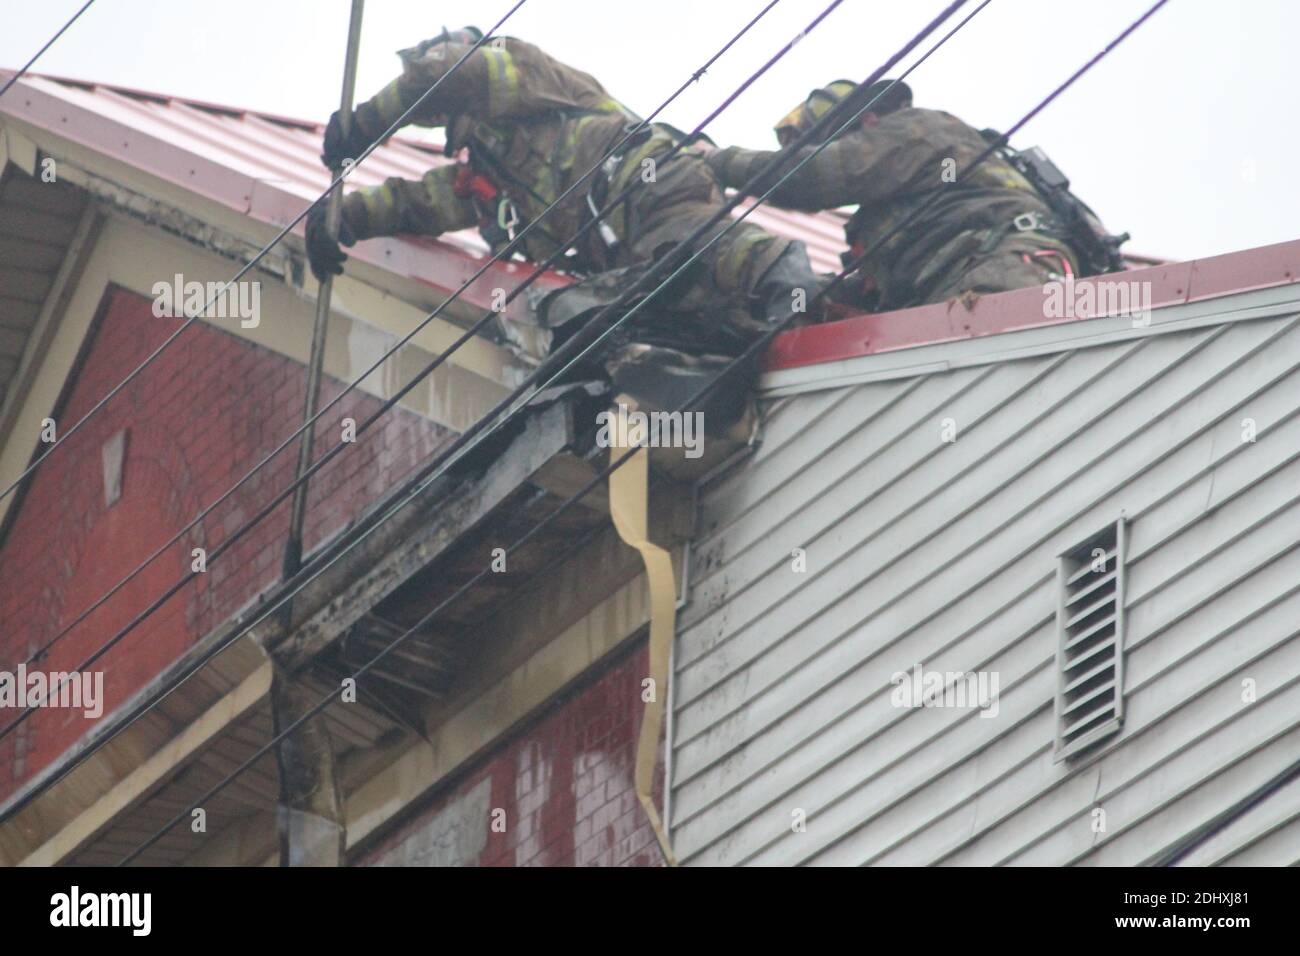 Zwei Feuerwehrleute arbeiten zusammen, um ein Feuer auf dem Dach eines Gebäudes zu löschen; einer muss den anderen halten, damit er nicht vom Dach fällt Stockfoto